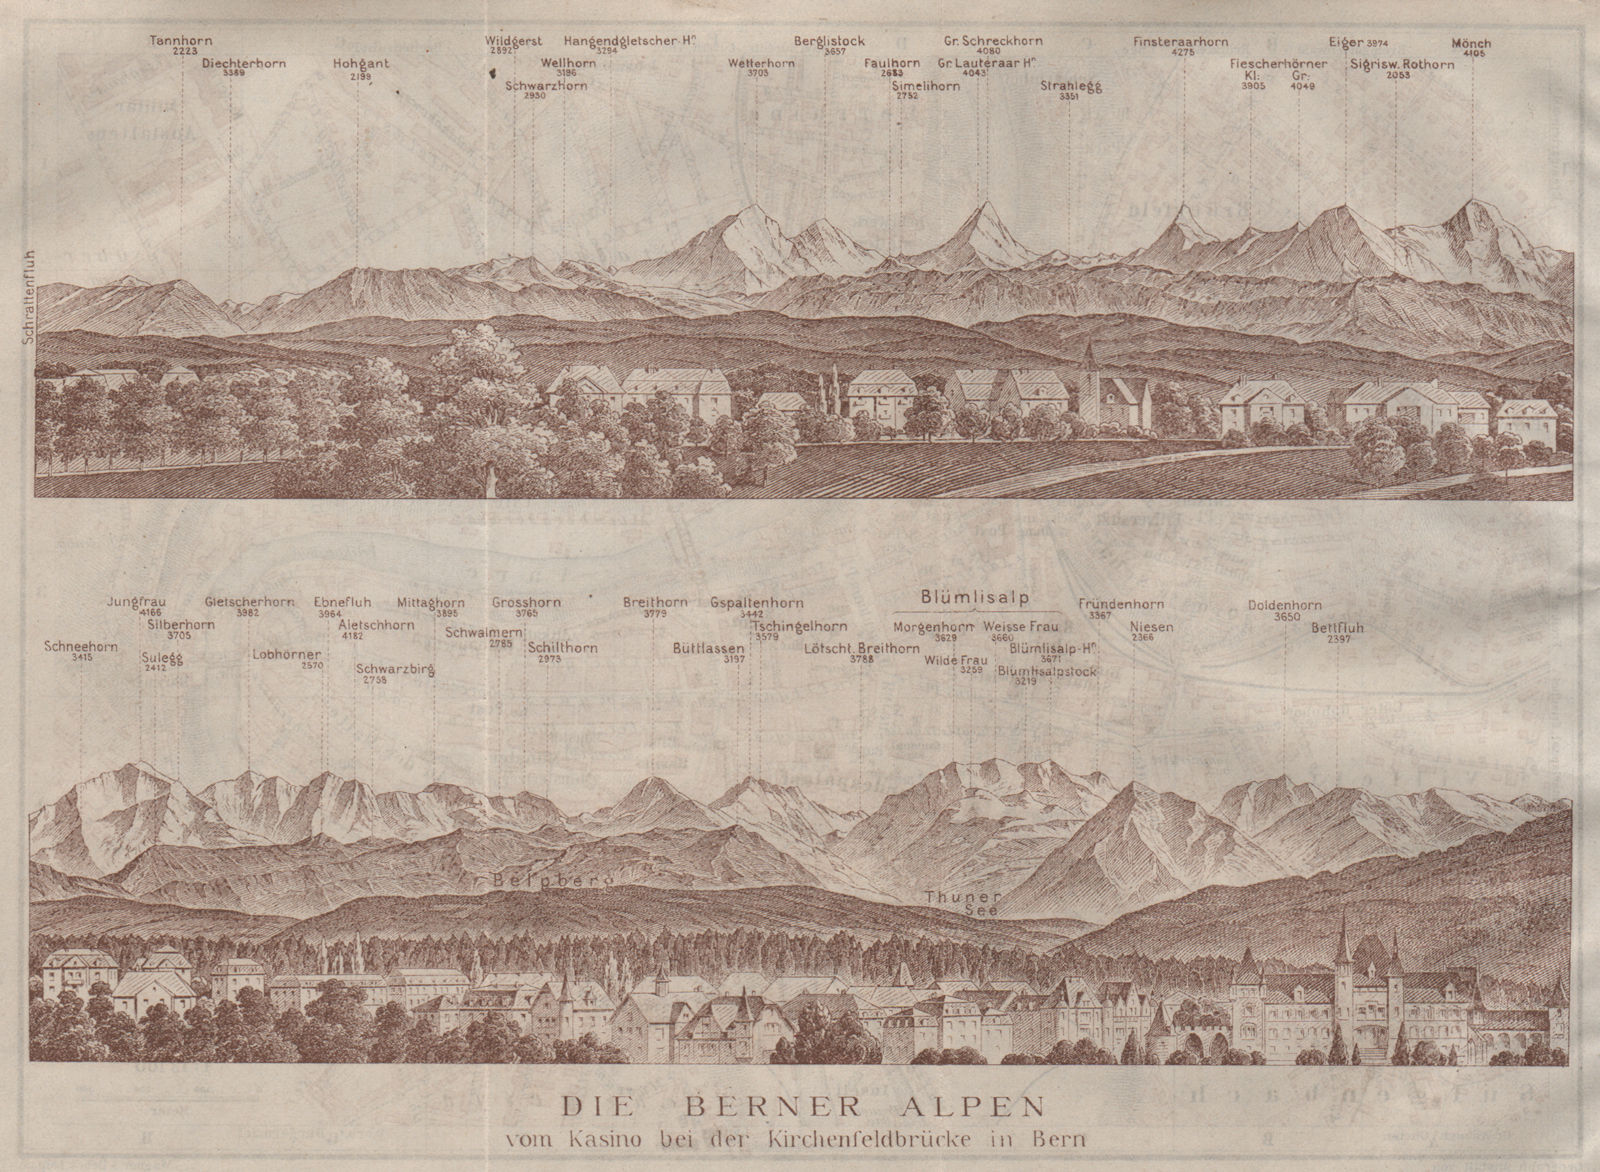 Associate Product PANORAMA vom/from BERN/Berne. Blumisalp Eiger Jungfrau Gletscherhorn 1911 map